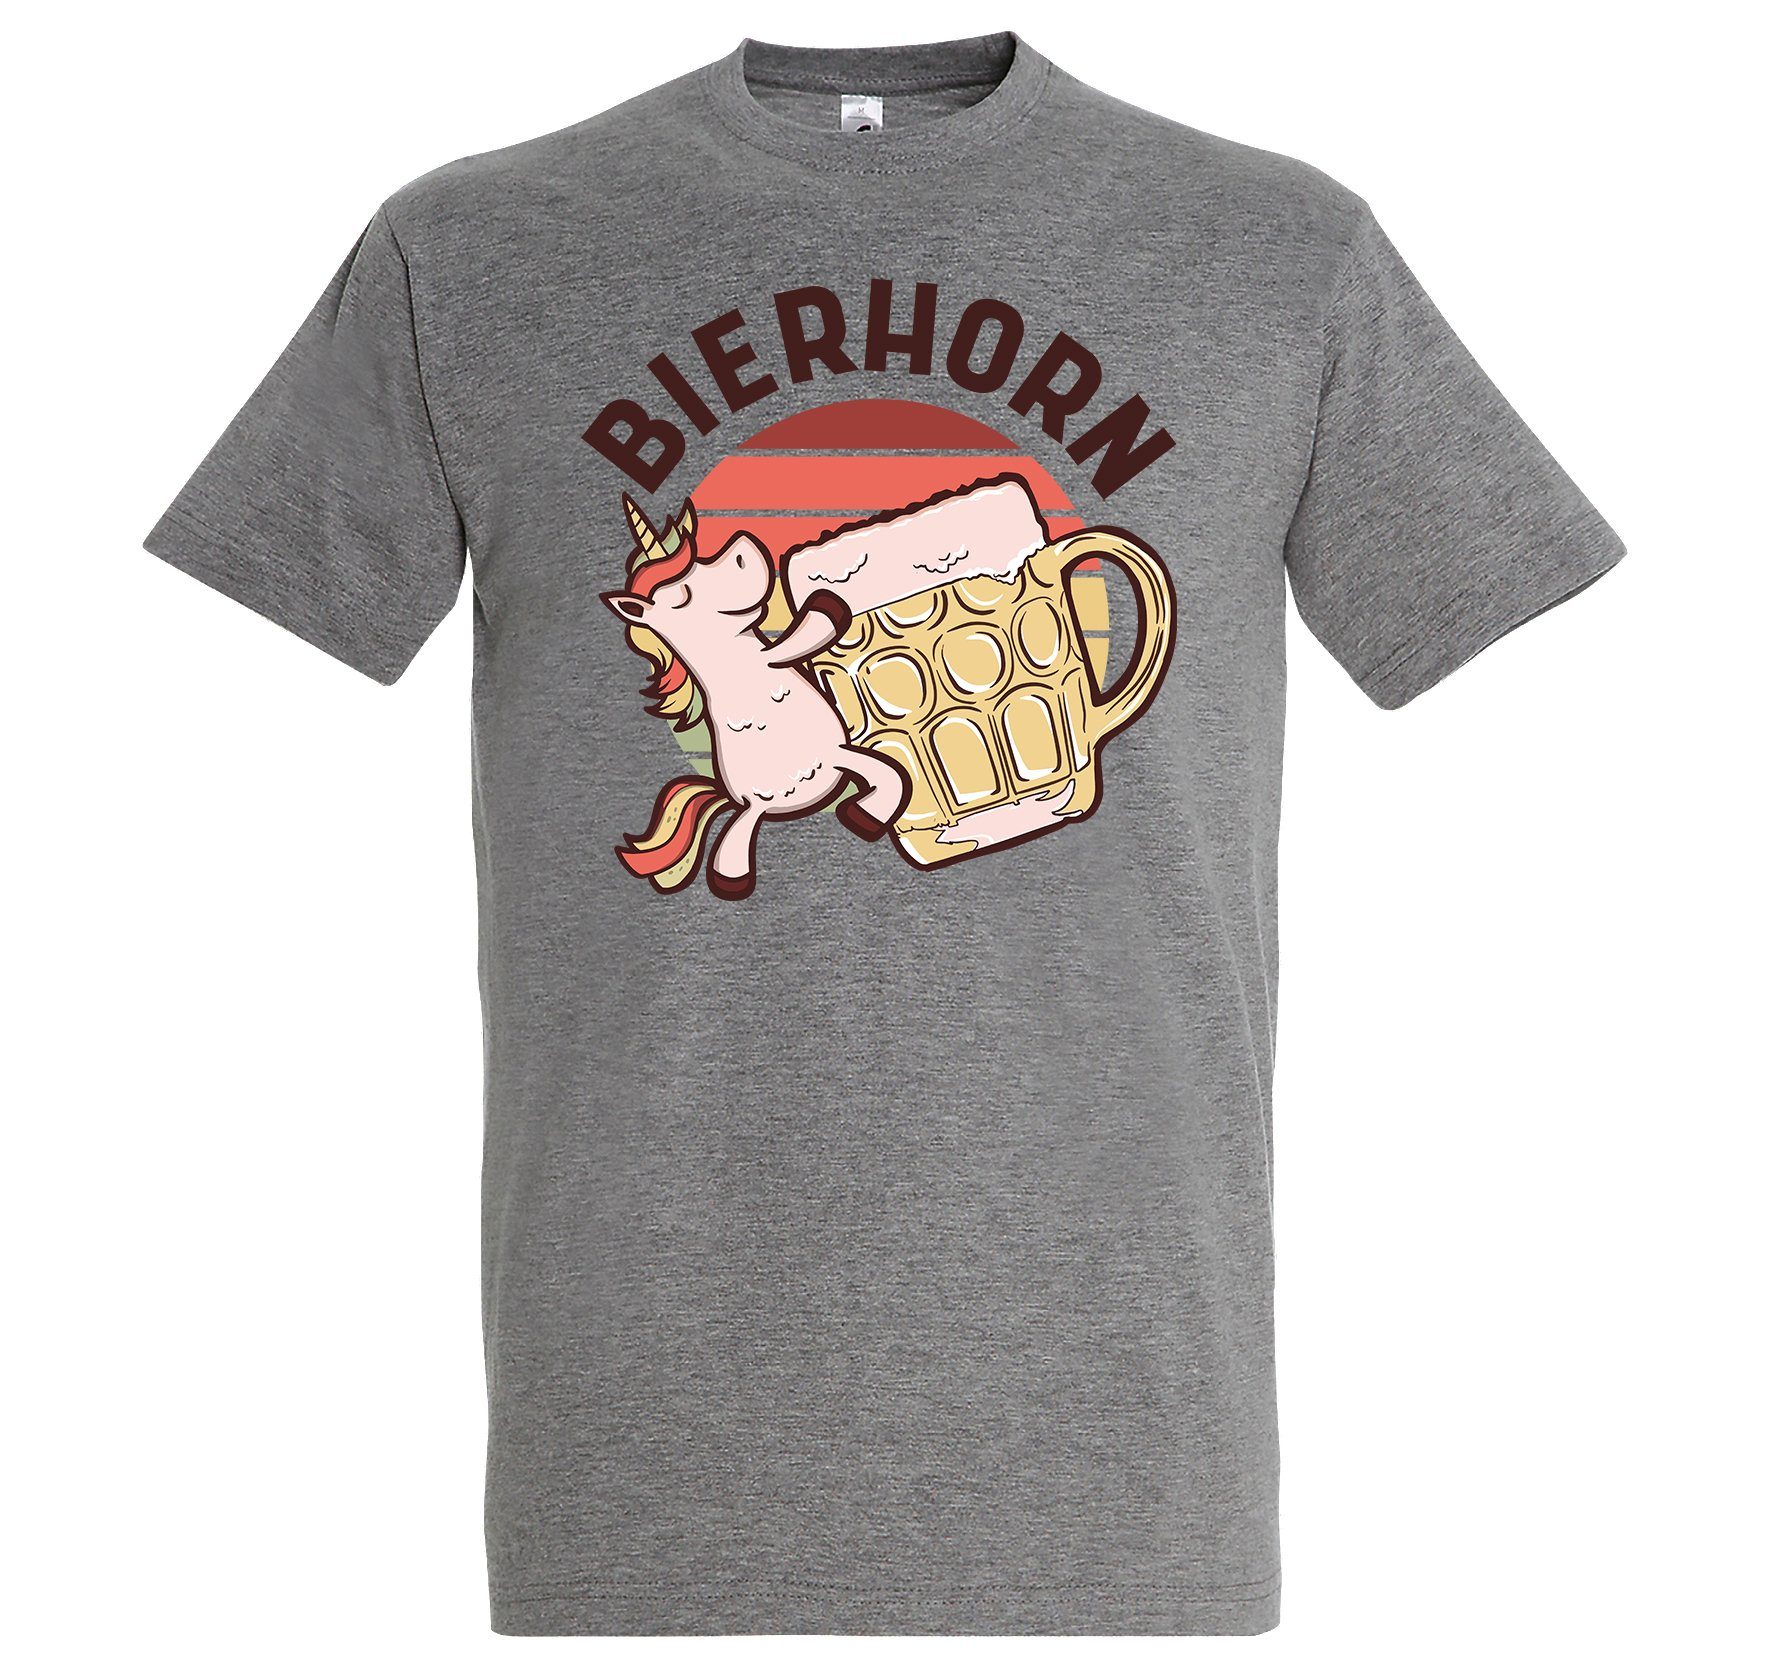 Youth Designz T-Shirt Bierhorn lustigem T-Shirts Grau mit Spruch Herren